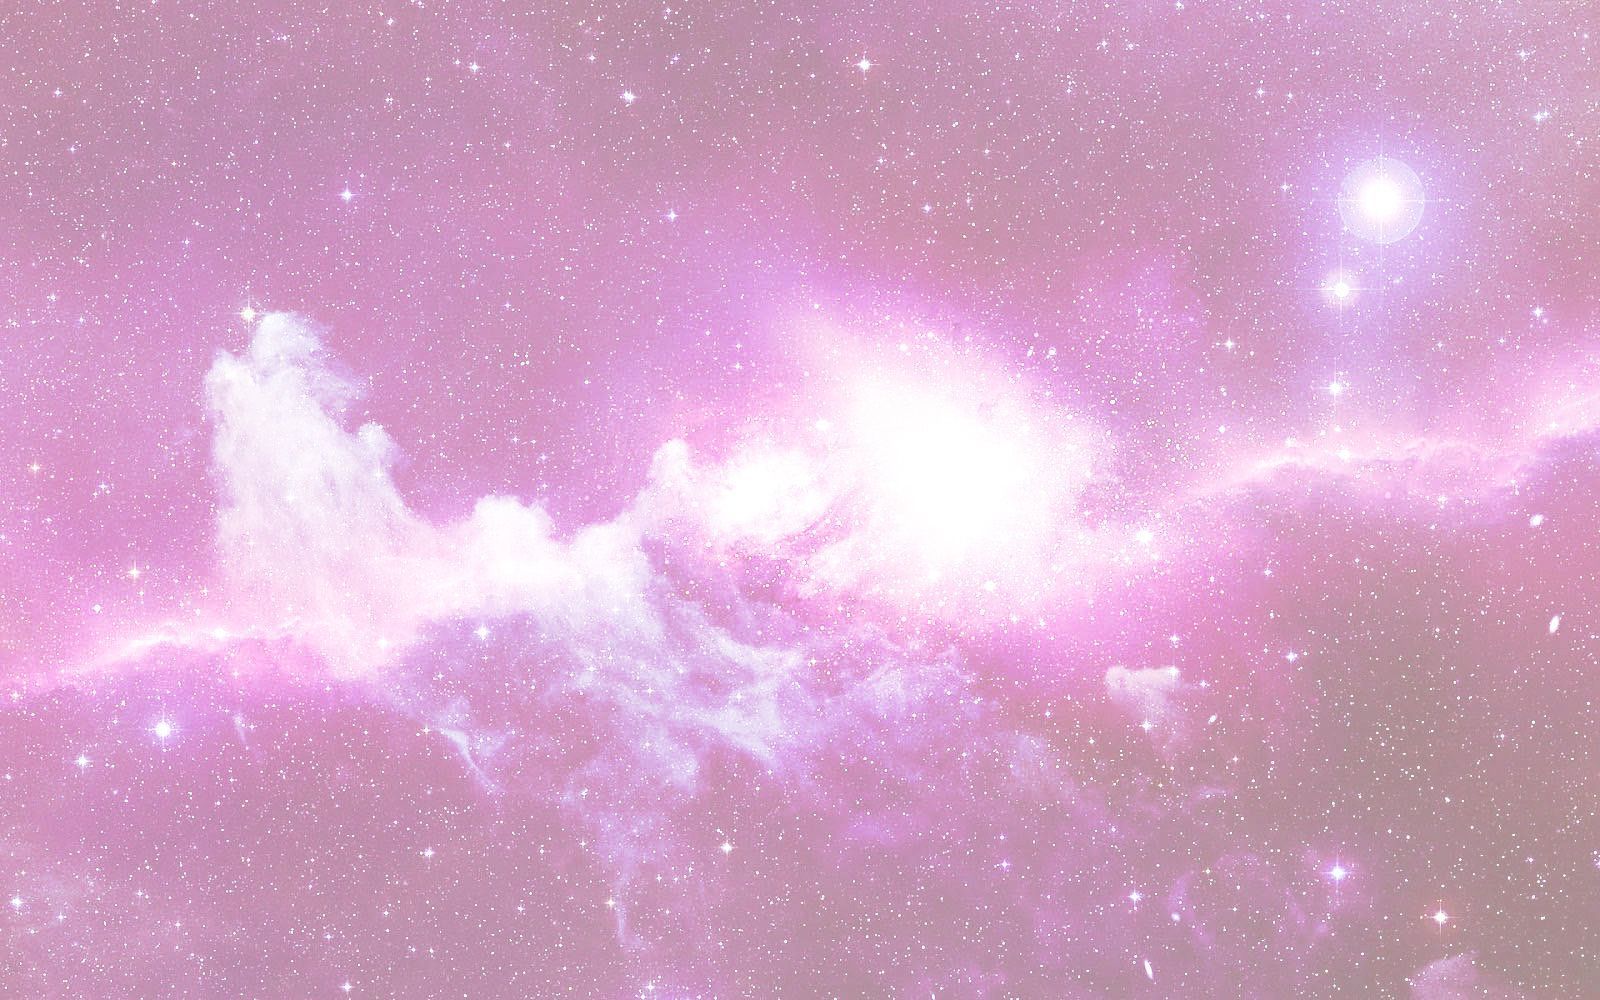 Hình nền máy tính Pastel Galaxy trên WallpaperDog cho bạn một trải nghiệm không thể tuyệt vời hơn. Những hình ảnh vũ trụ đầy mê hoặc và tông màu pastel nhẹ nhàng trên máy tính sẽ đem lại cho bạn sự vui vẻ và sự thư thái. Hãy truy cập ngay để tải về và thưởng thức những đường cong và cách điệu tuyệt đẹp này.